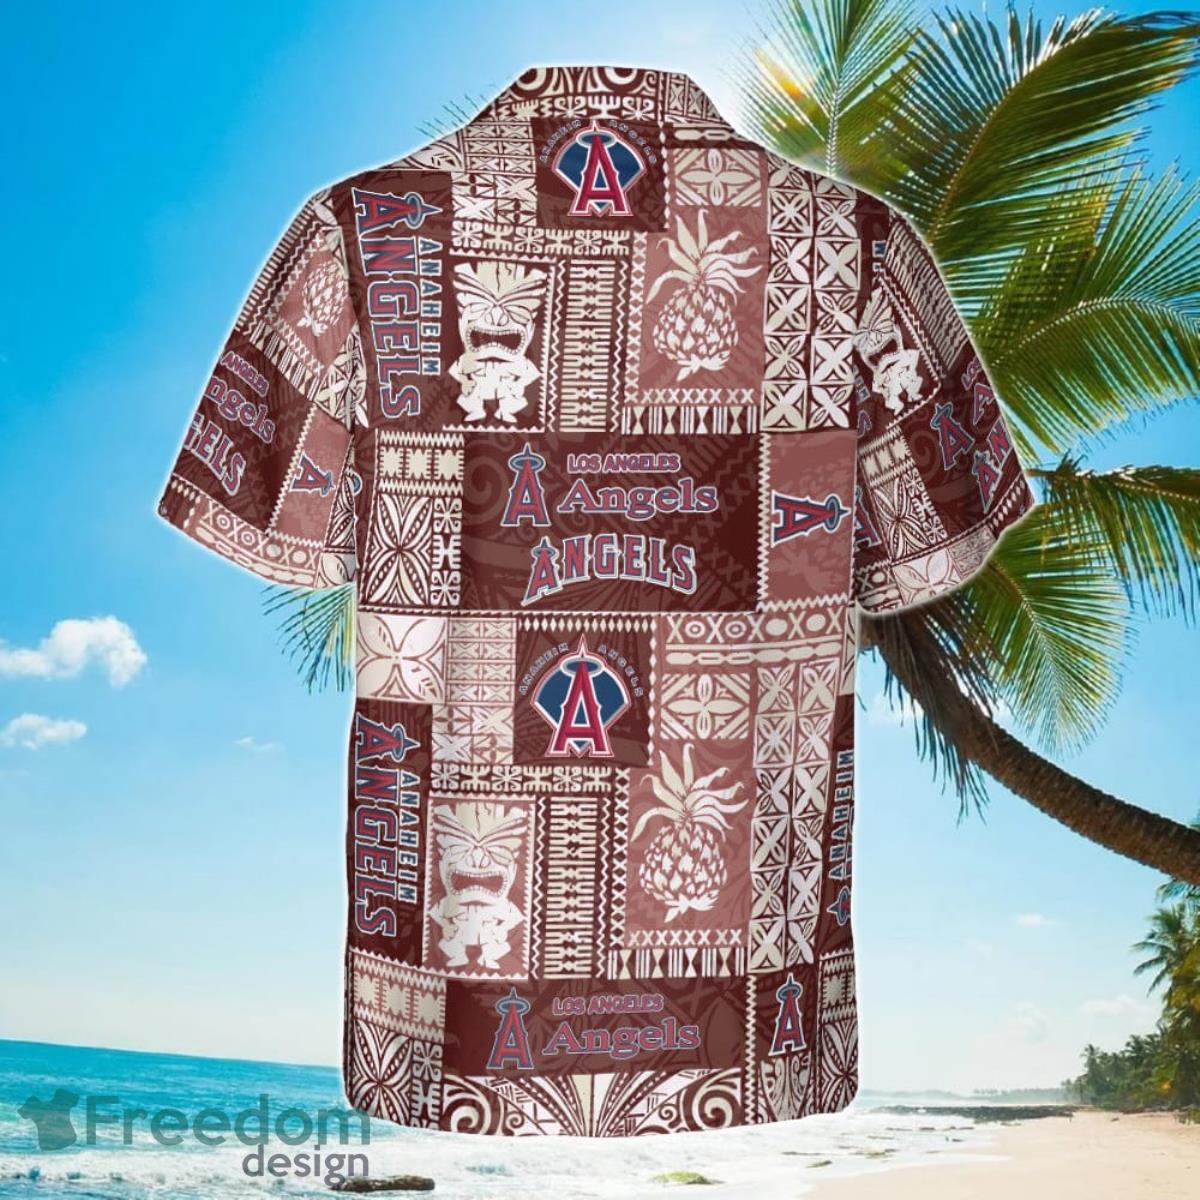 Los Angeles Angels Major League Baseball 2023 Hawaiian Shirt - Freedomdesign